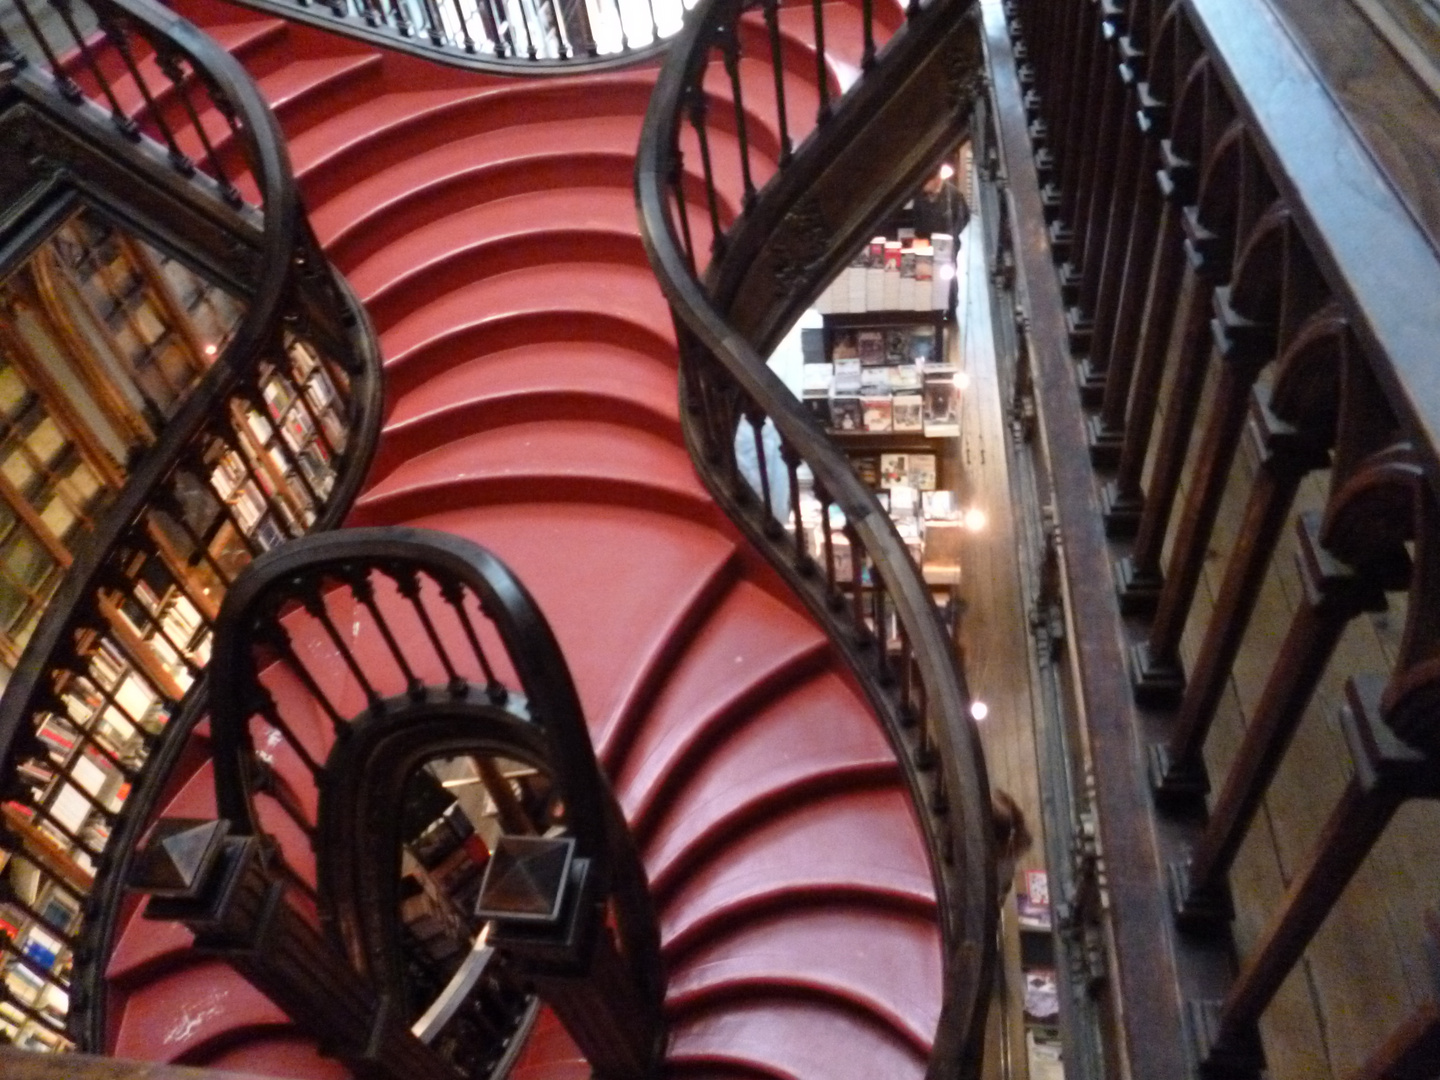 Escadas in Porto , Vorbild fuer die schwingenden Treppen von Harry Potter?